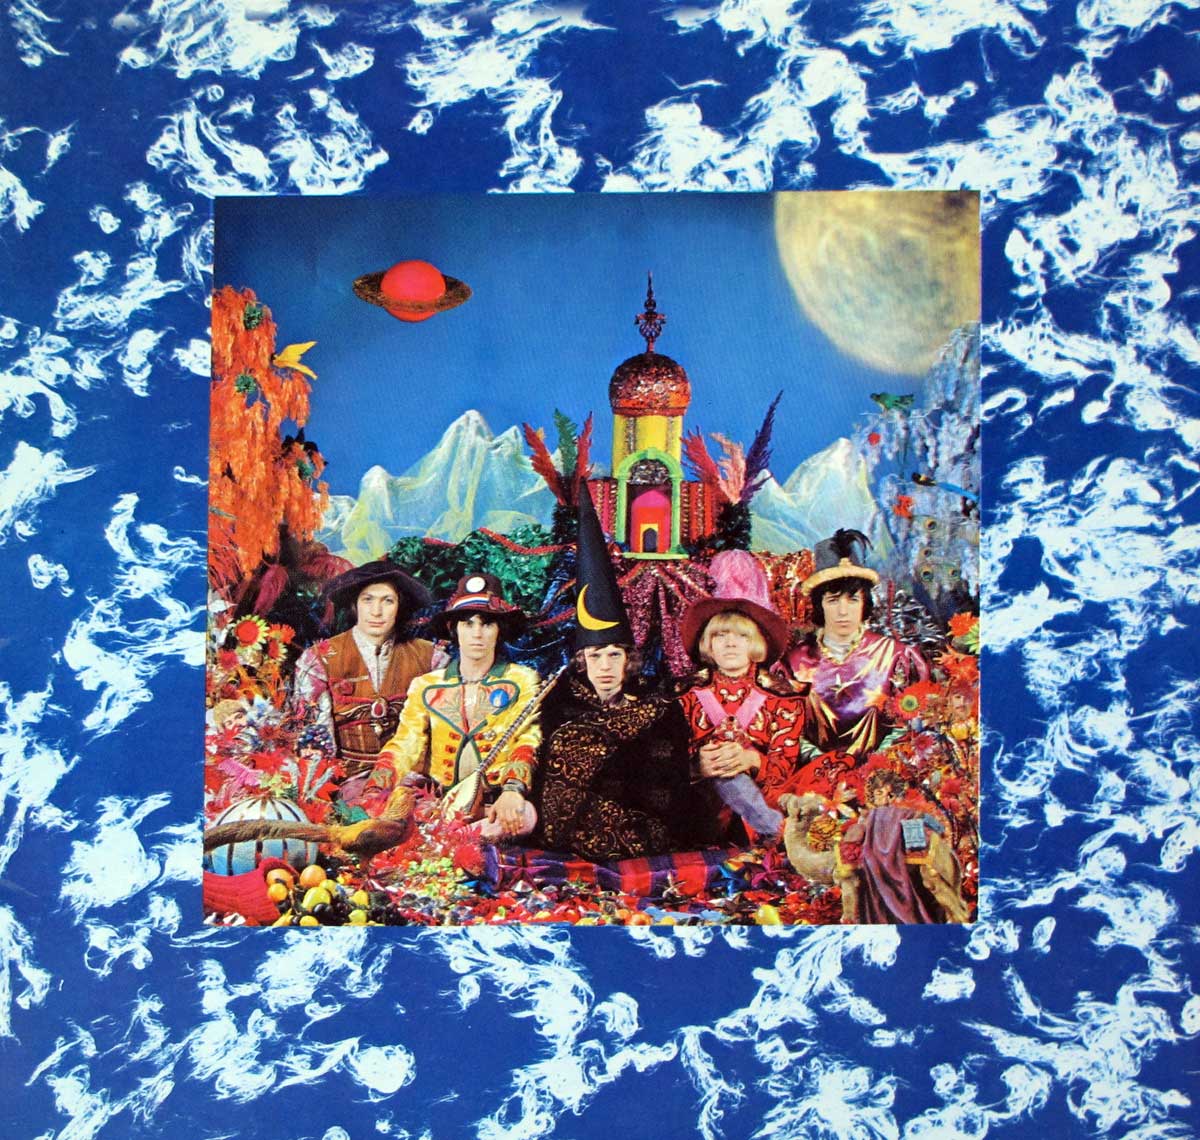 large album front cover photo of: ROLLING STONES  Their Satanic Majesties Request Decca txs 103 12" LP Vinyl Album 